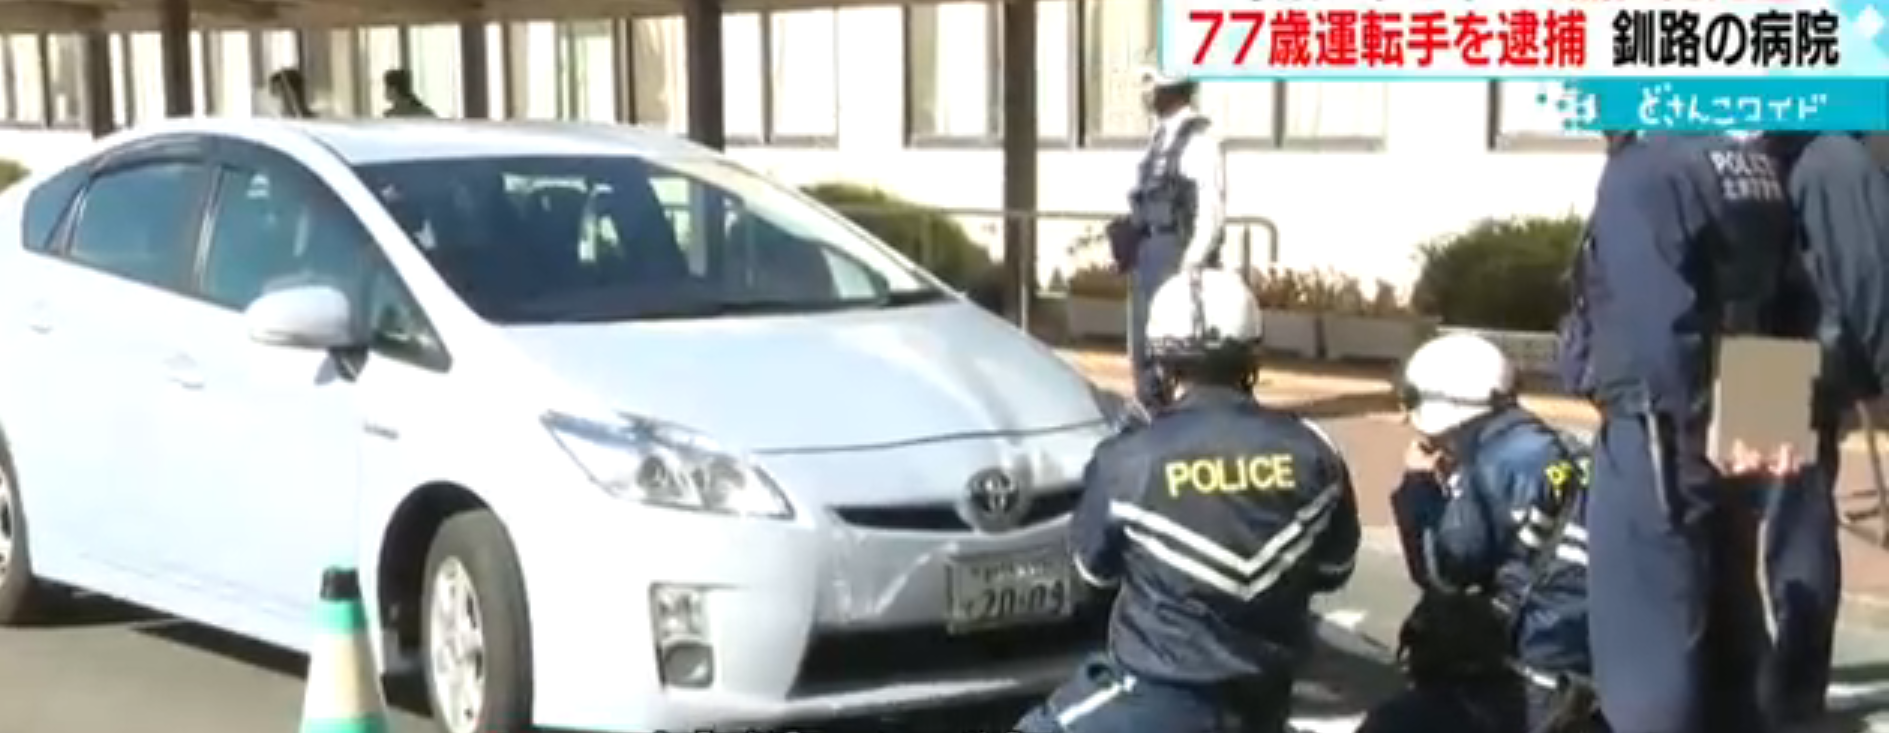 釧路総合病院ロータリー前の人身事故